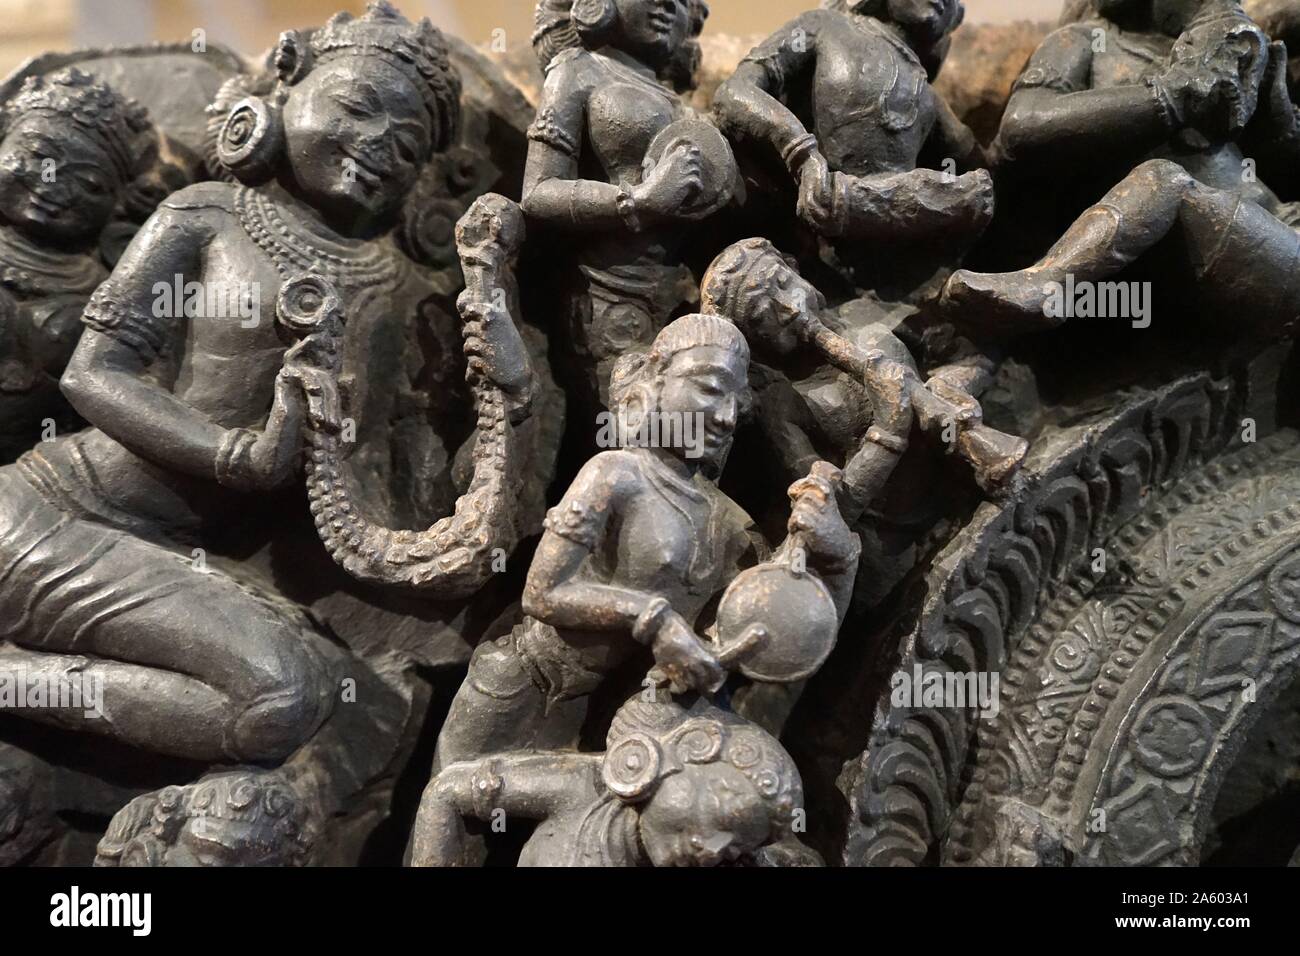 Detail einer Bronzestatue, die Darstellung der Gottheit Shiva und der Göttin Parvati als das ursprüngliche Göttliche Paar sitzt. Vom 12. Jahrhundert Stockfoto